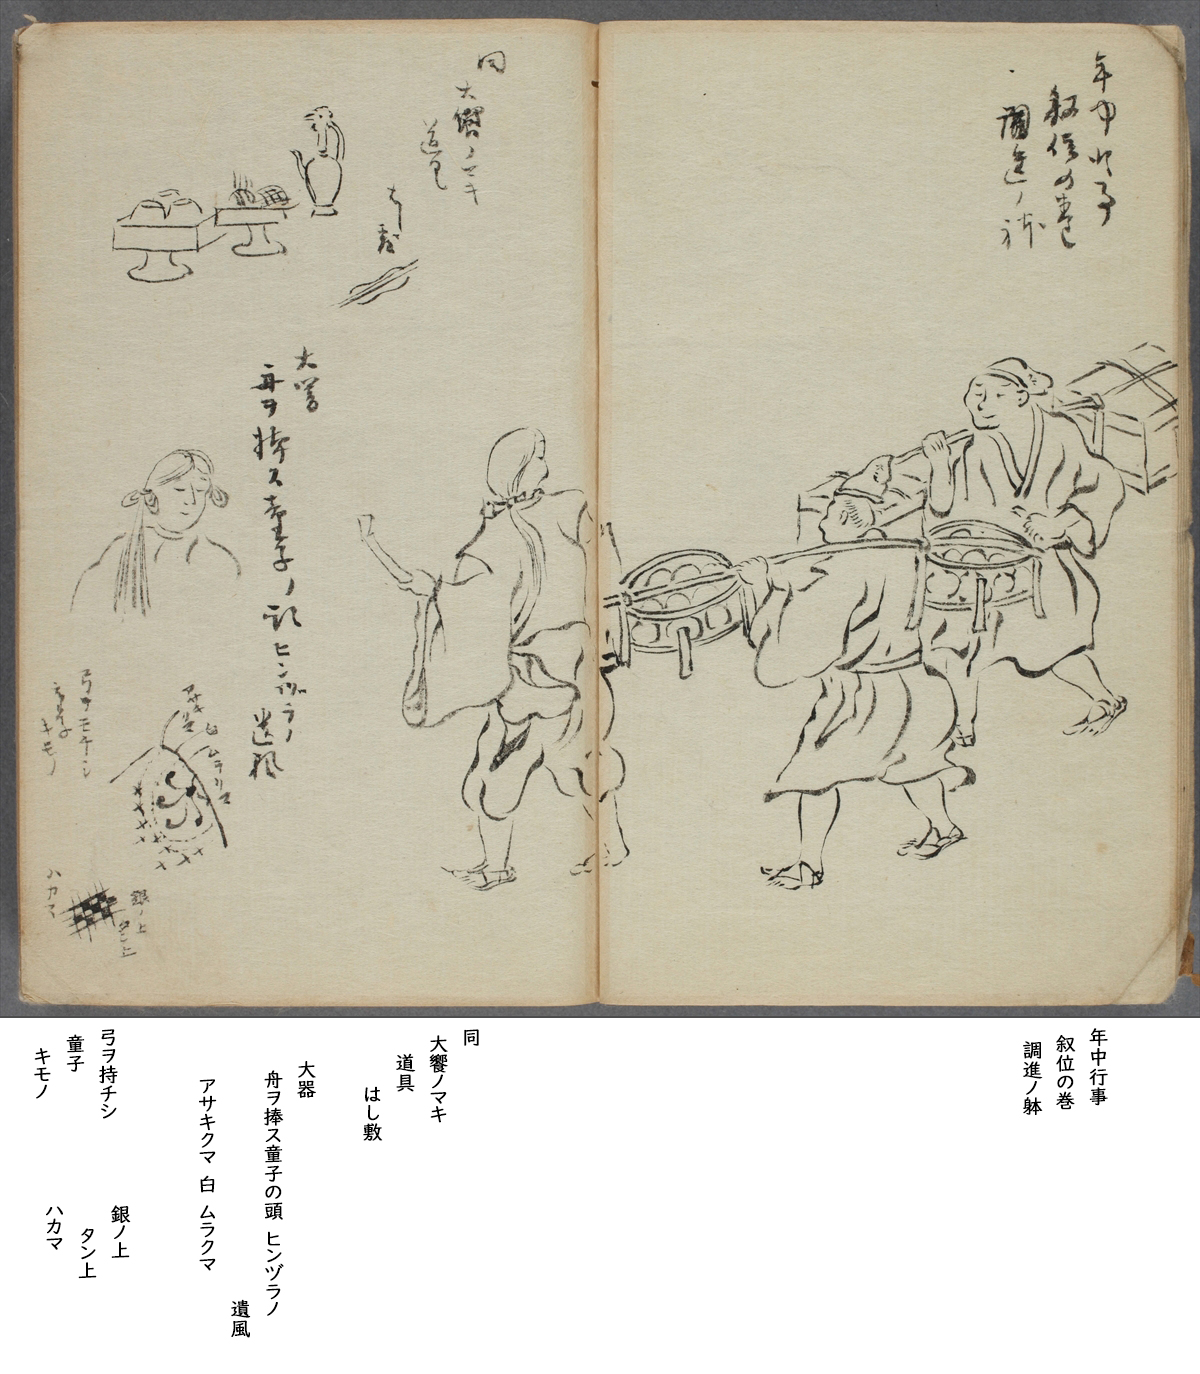 調書 作品画像 展覧会 日本美術の記録と評価